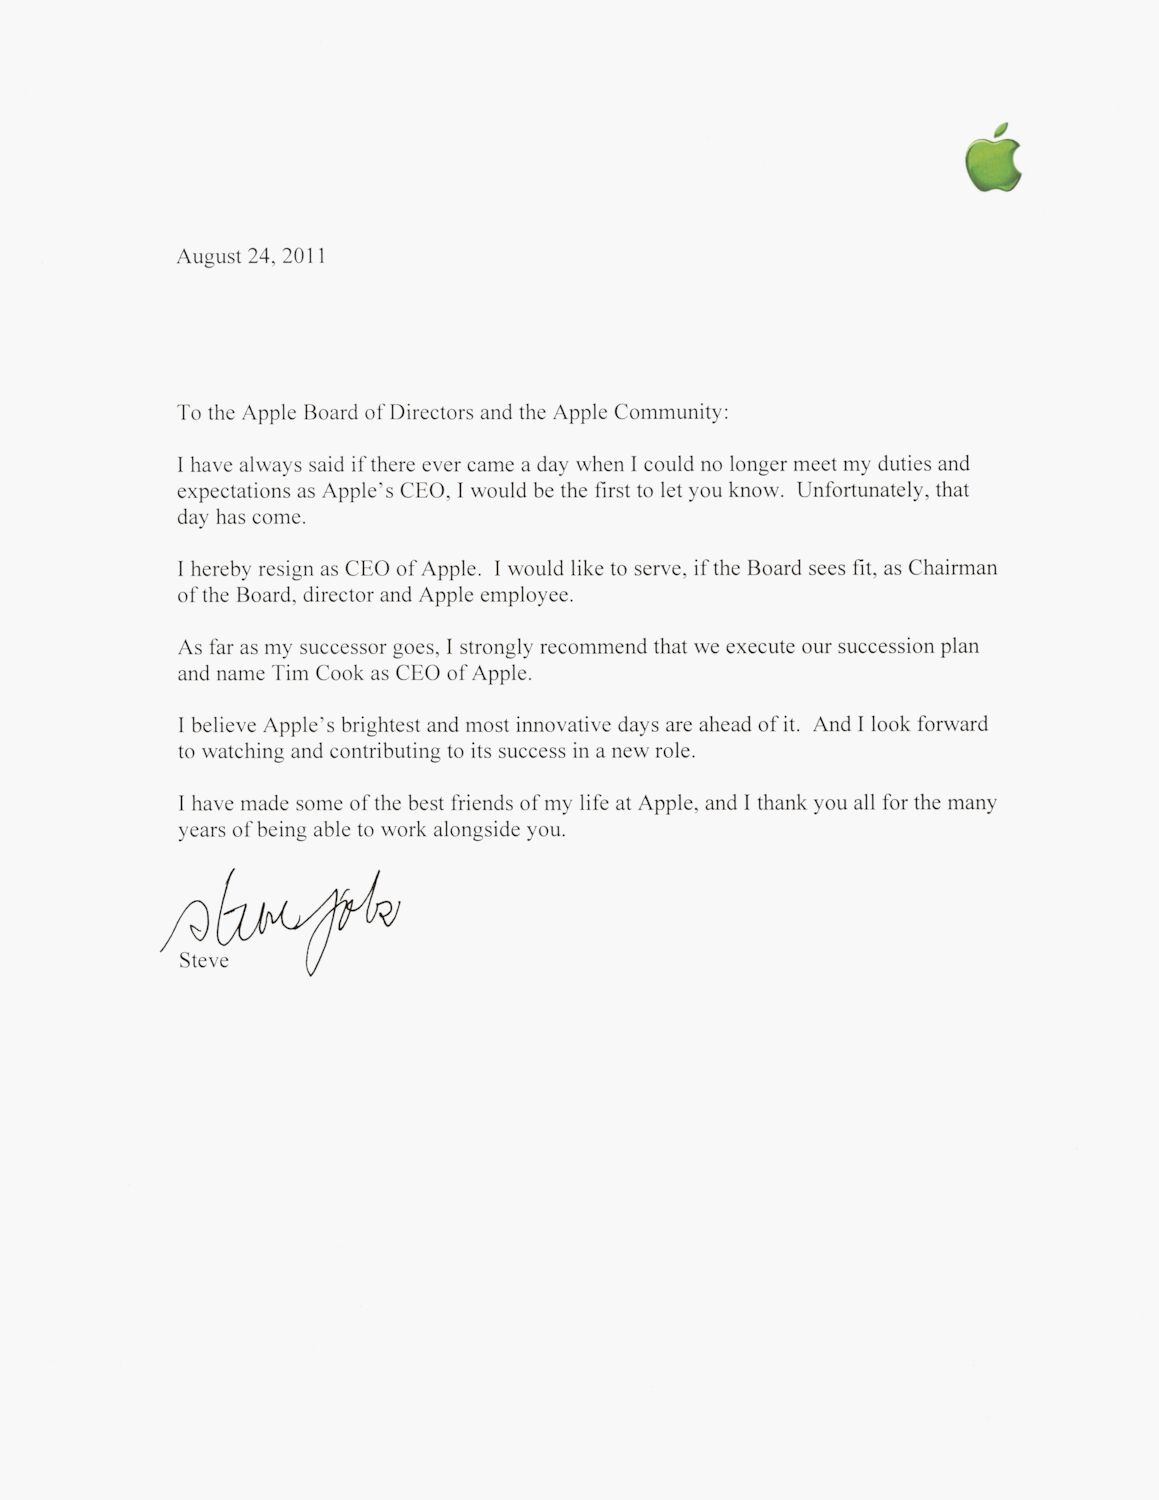 The official resignation from Steve on August 24, 2011, written on Apple letterhead.